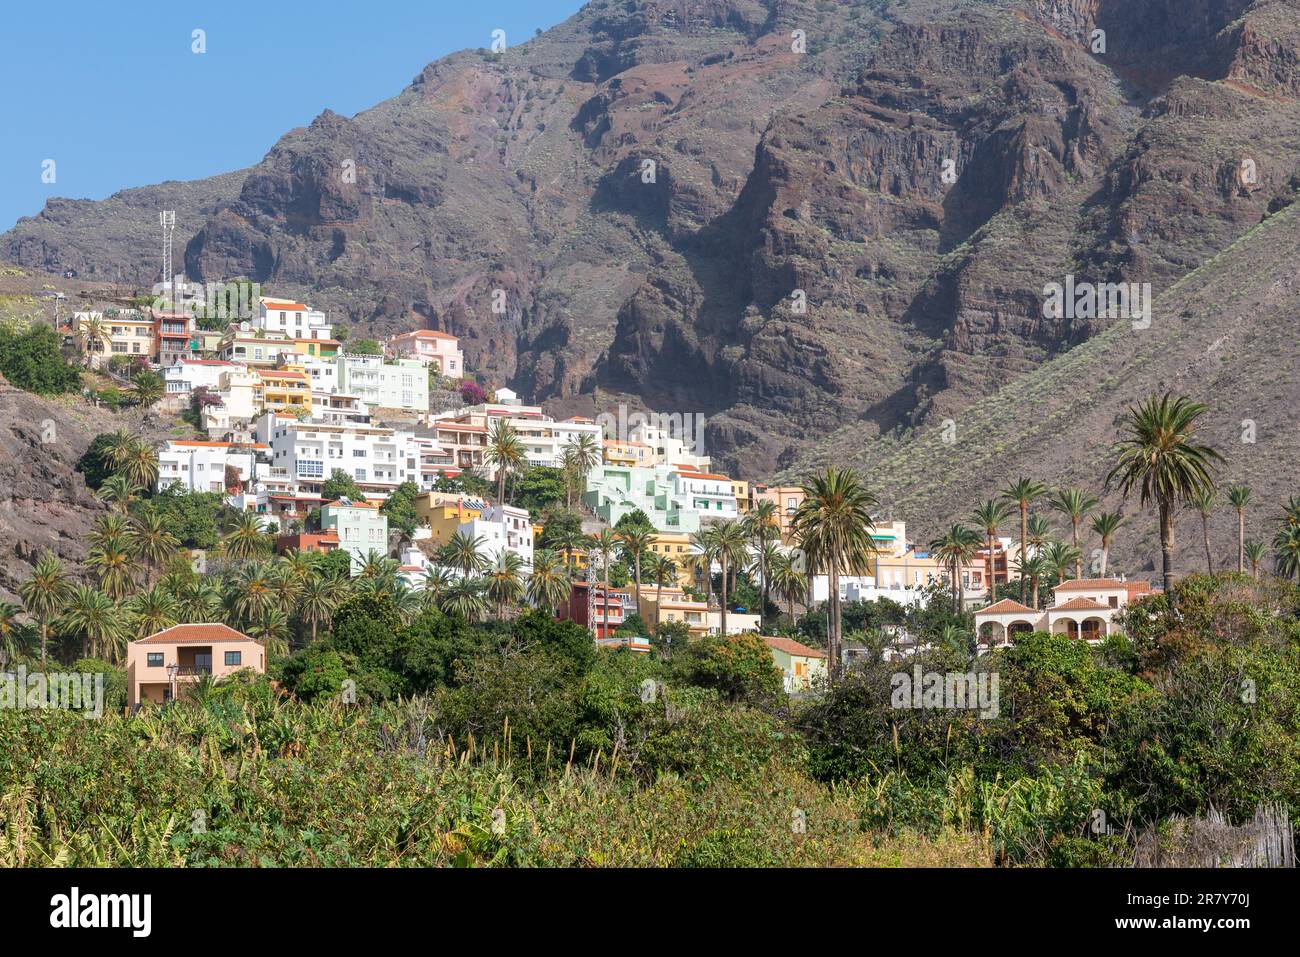 El pueblo de La Calera en la ladera de la montaña del Valle Gran Rey en la isla de La Gomera. El pequeño pueblo está situado en el lado oeste de la Foto de stock